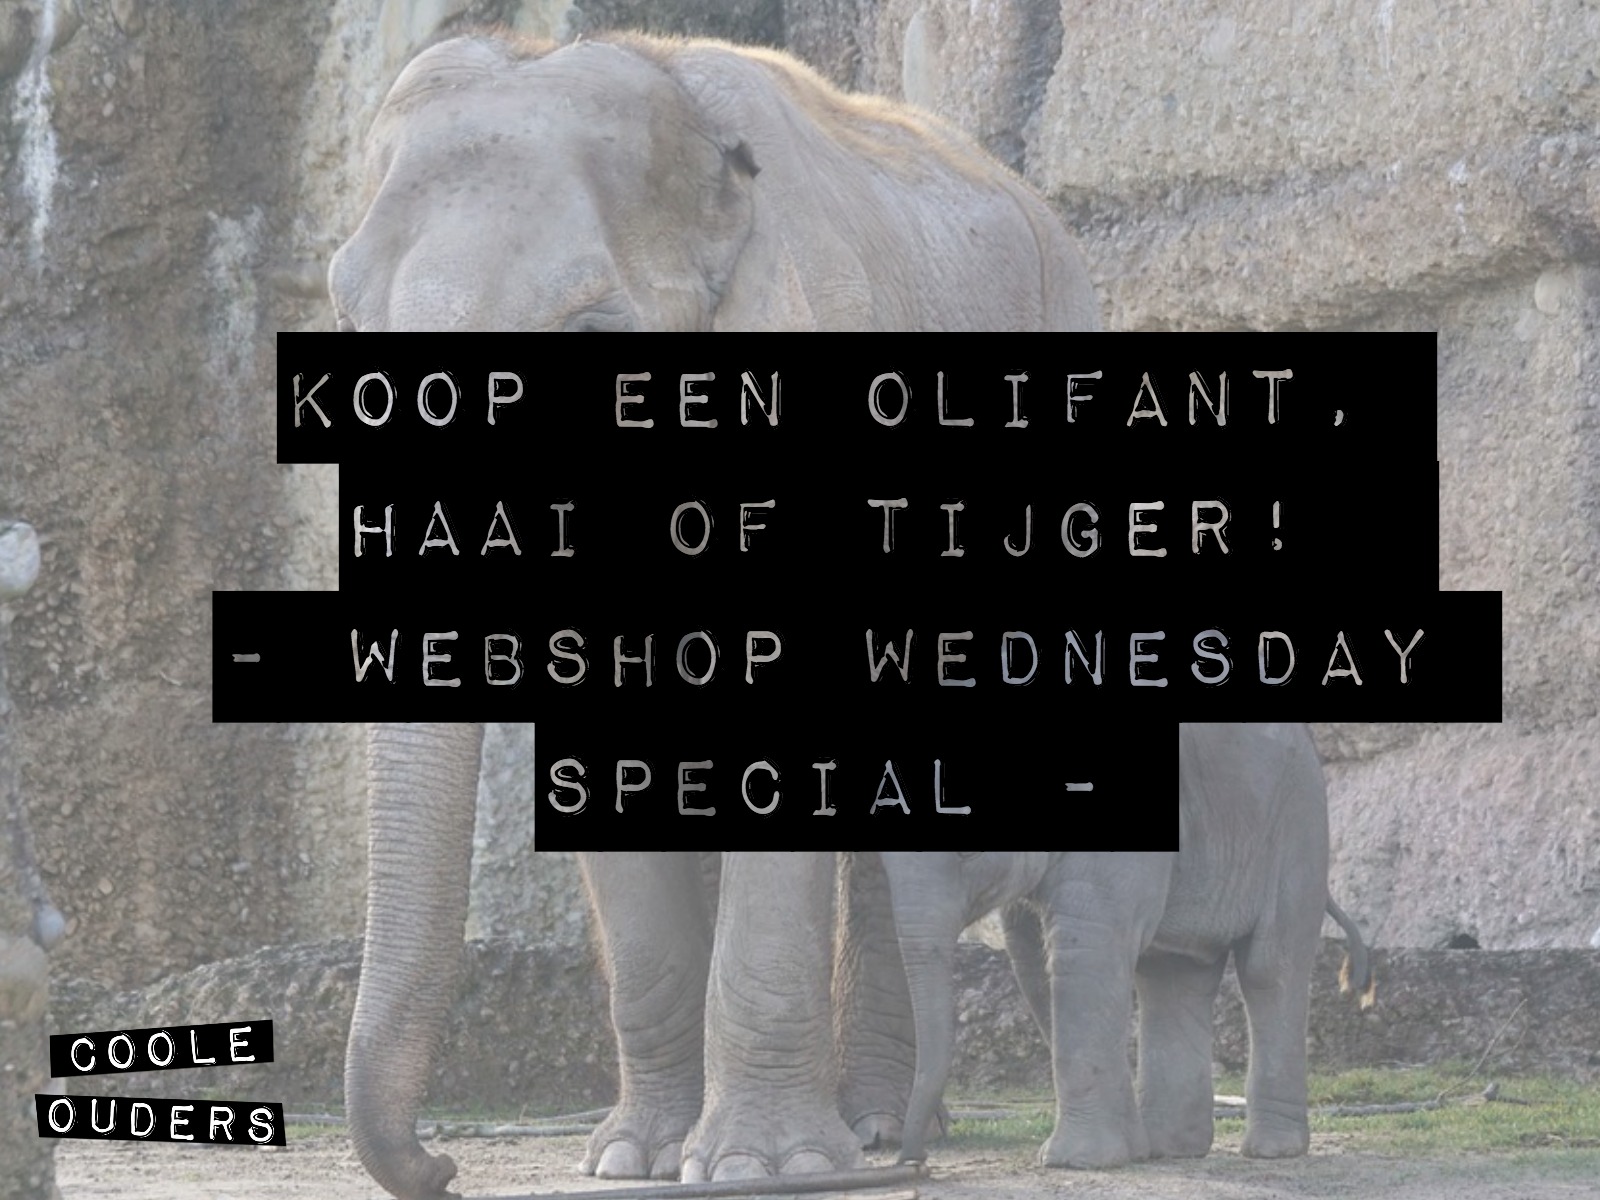 Koop een olifant, tijger of haai! – Webshop Wednesday Special